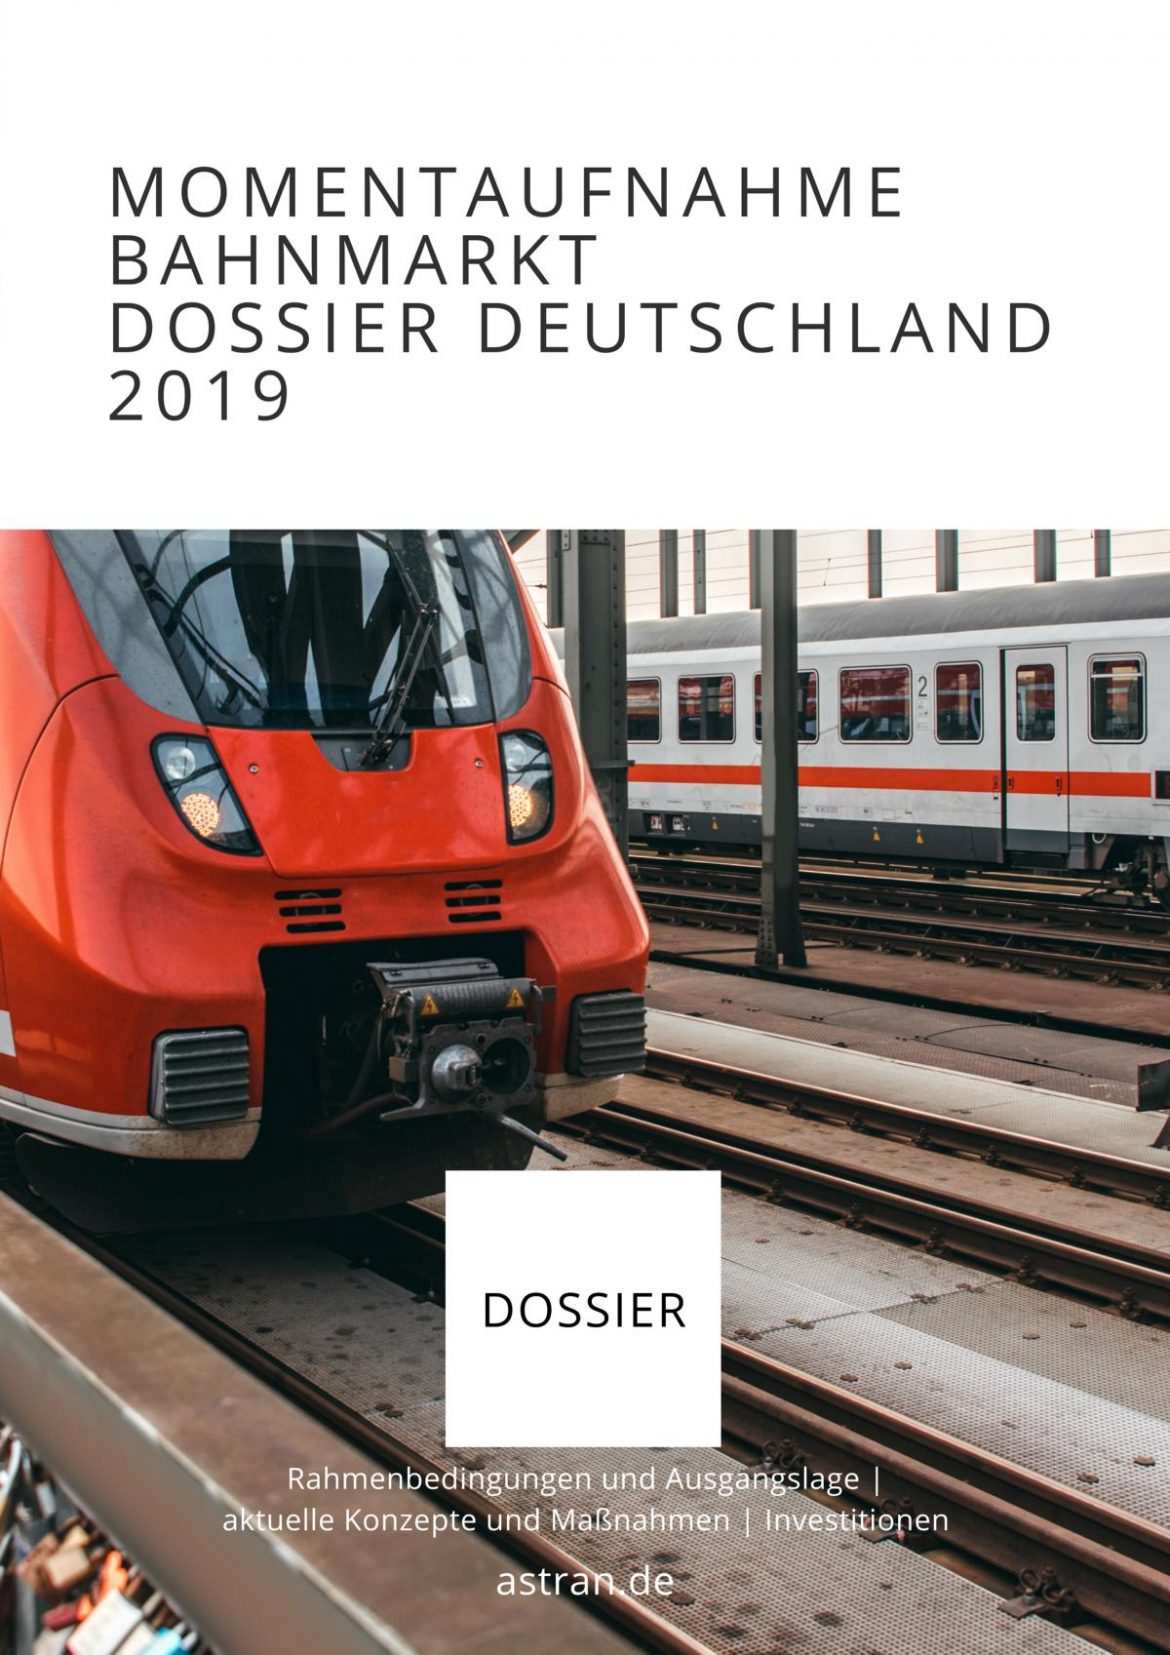 Momentaufnahme Bahnmarkt Dossier Deutschland 2019